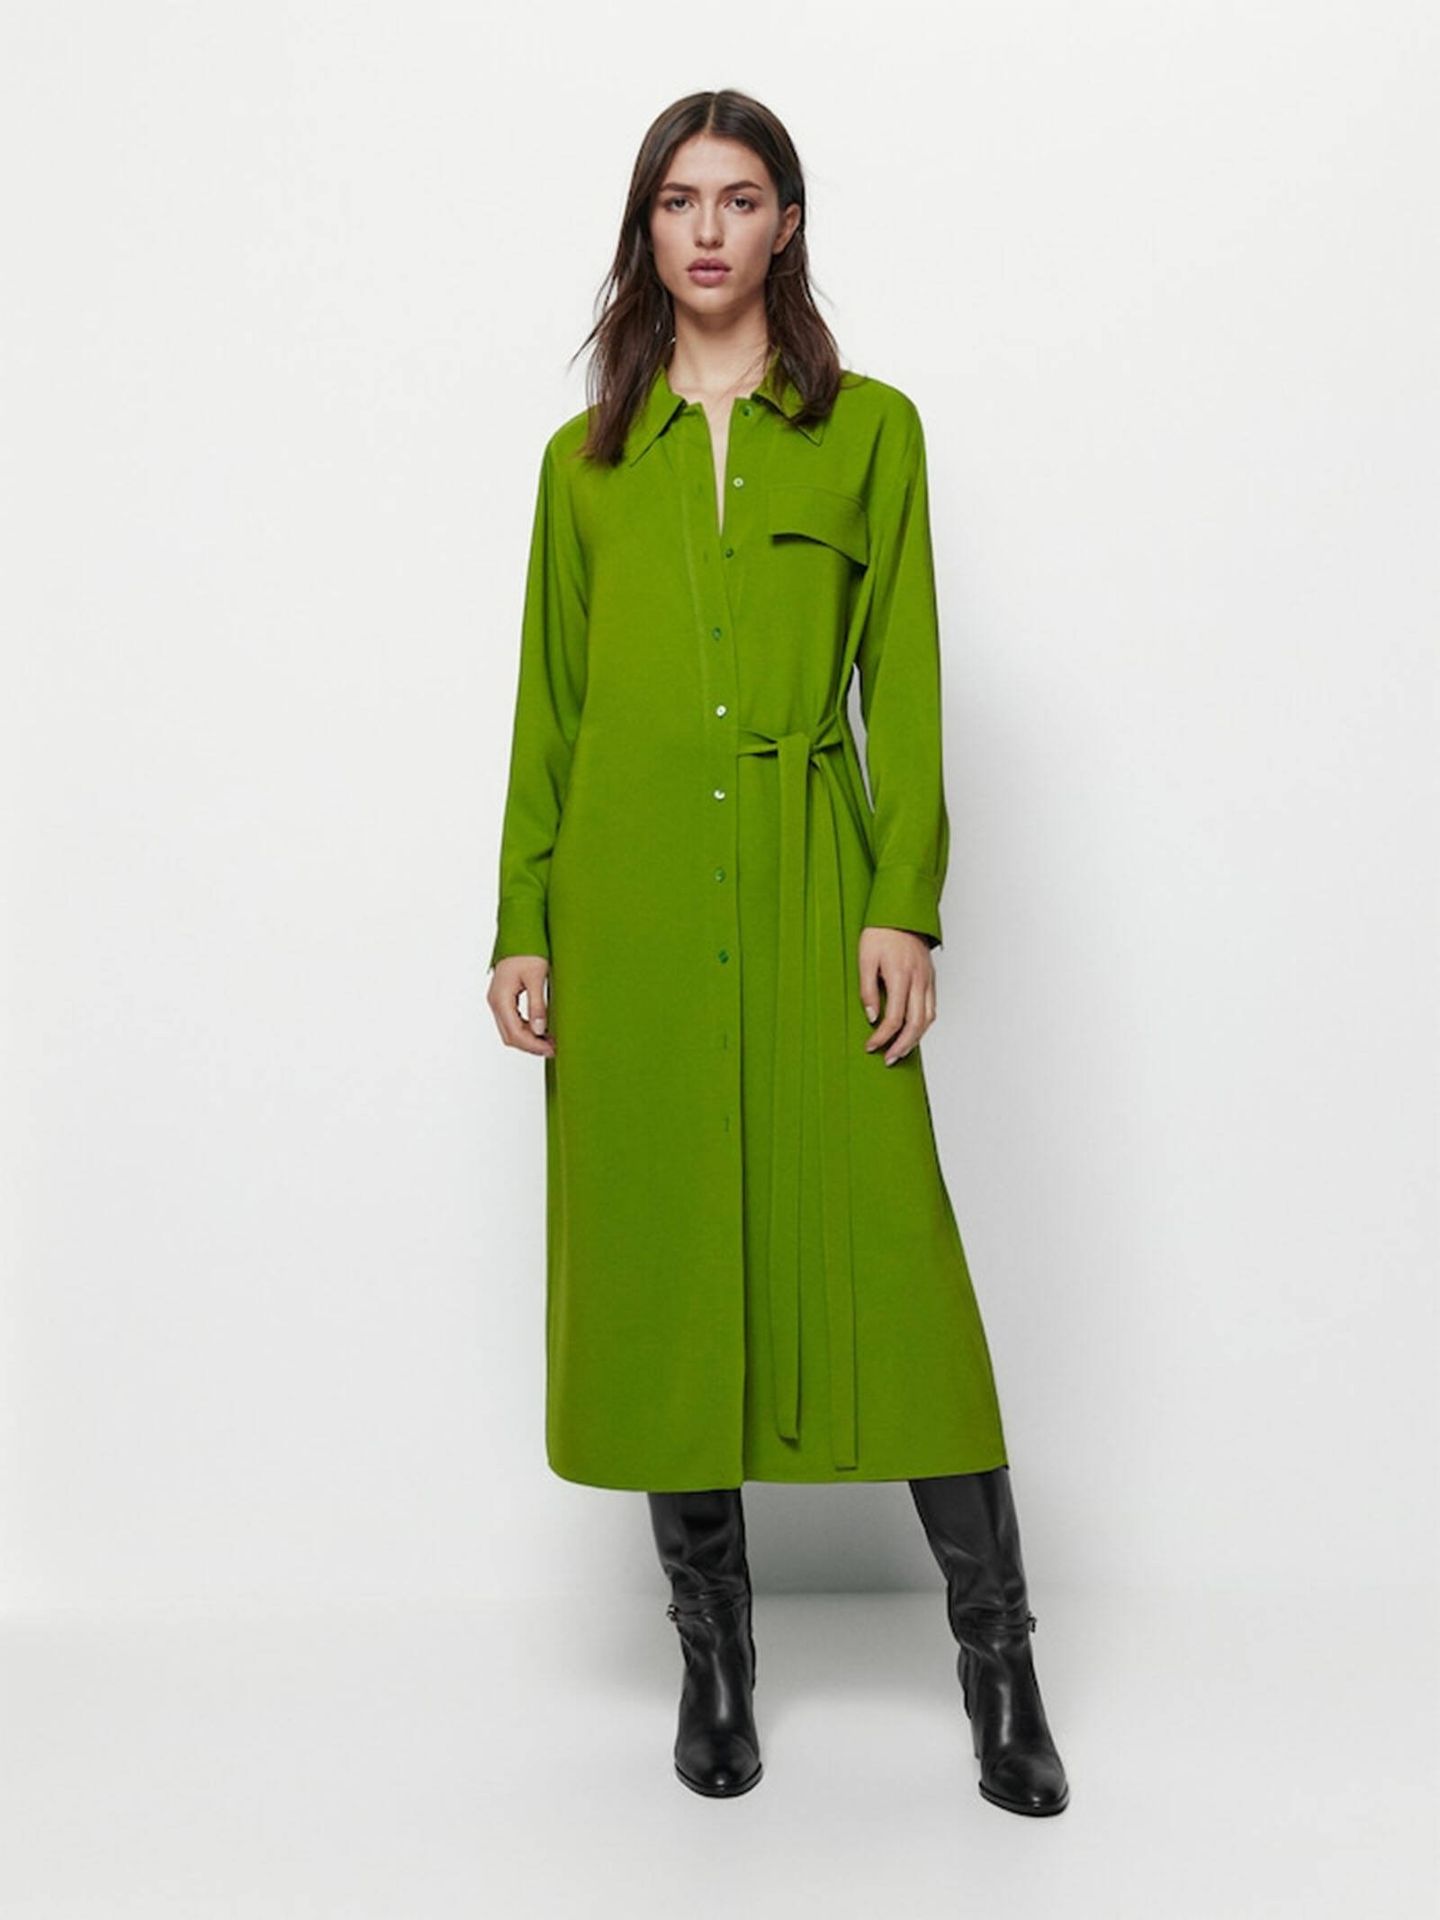 Vestido en el color tendencia de la temporada, el verde. (Massimo Dutti/Cortesía)